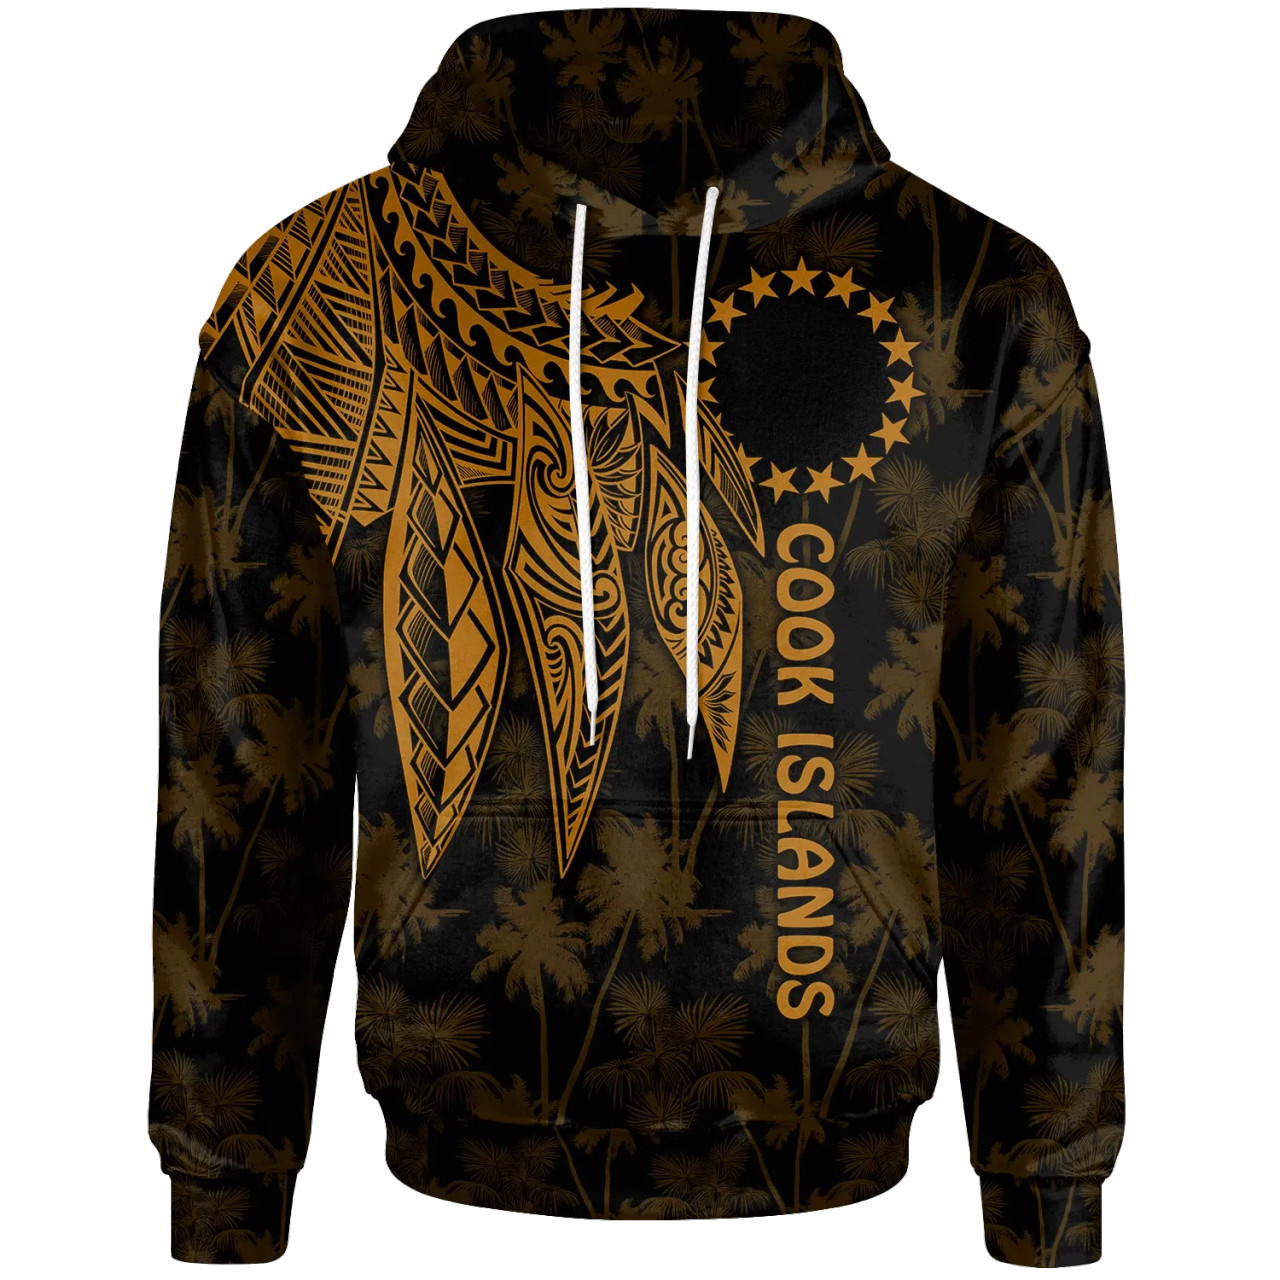 Cook Islands Hoodie - Polynesian Wings (Golden)